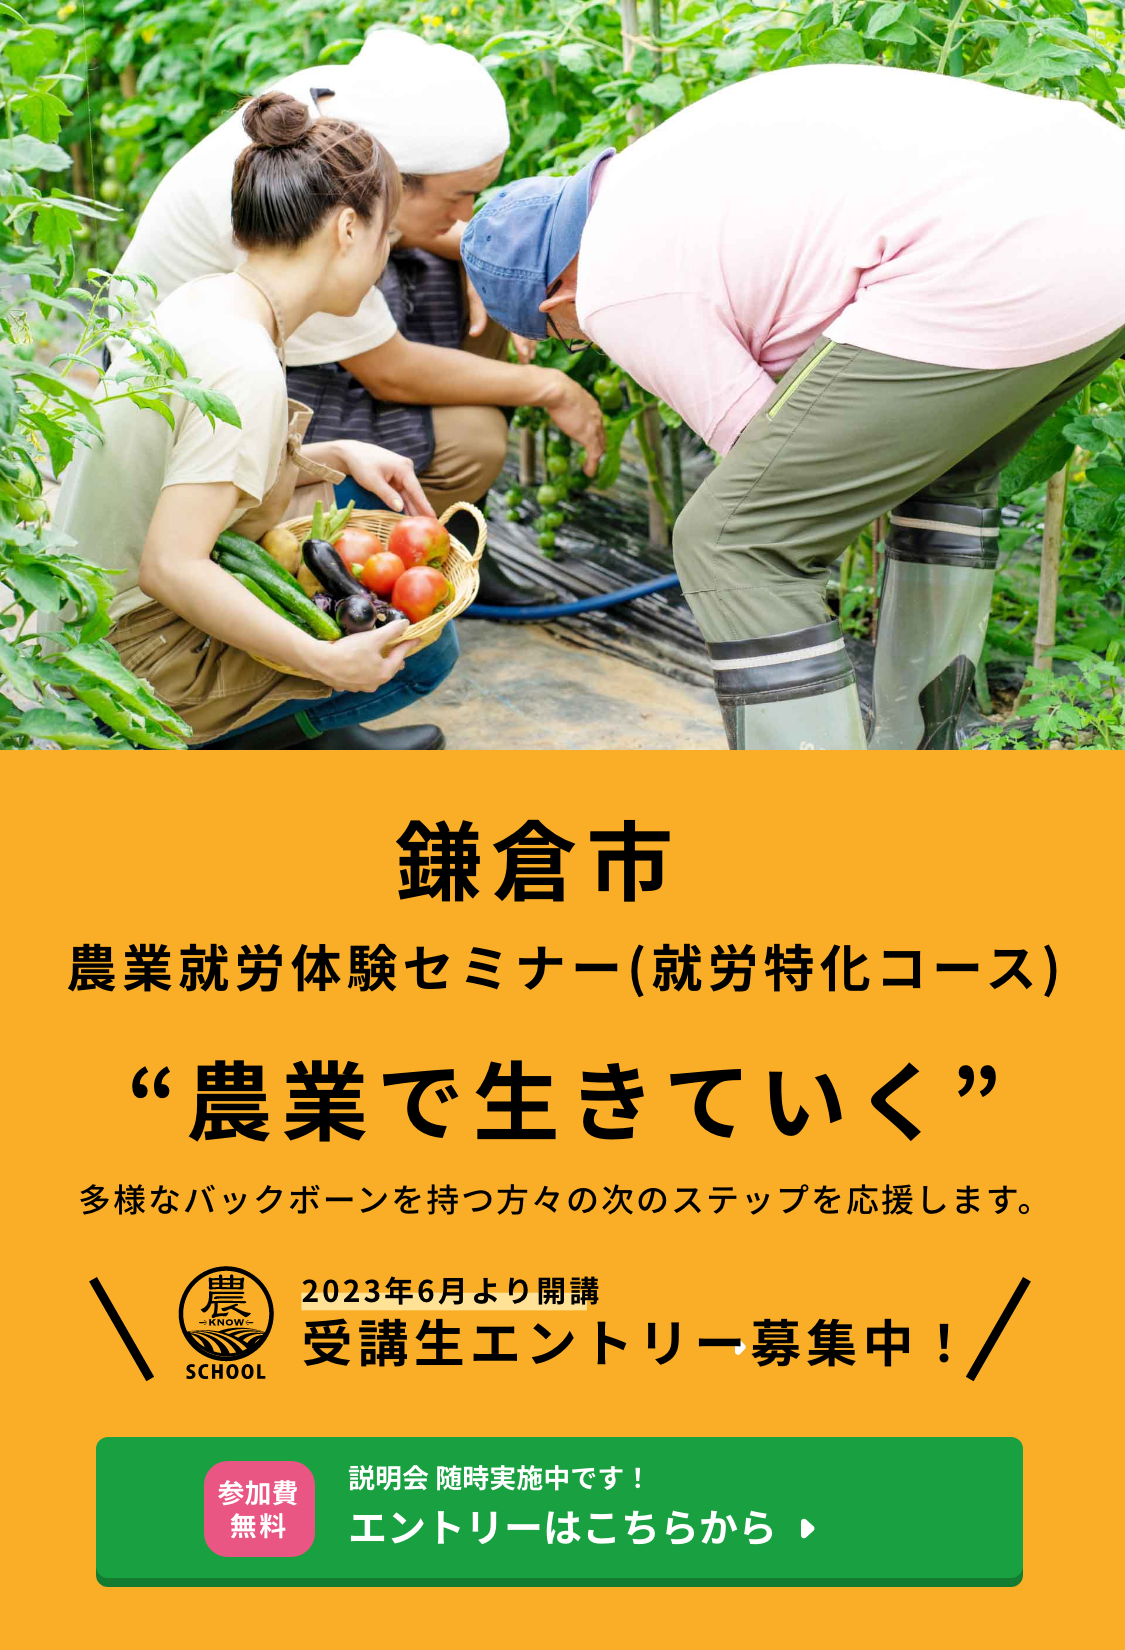 2023年6月より開講 鎌倉市農業就労体験セミナー(就労特化コース) 受講生エントリー募集中